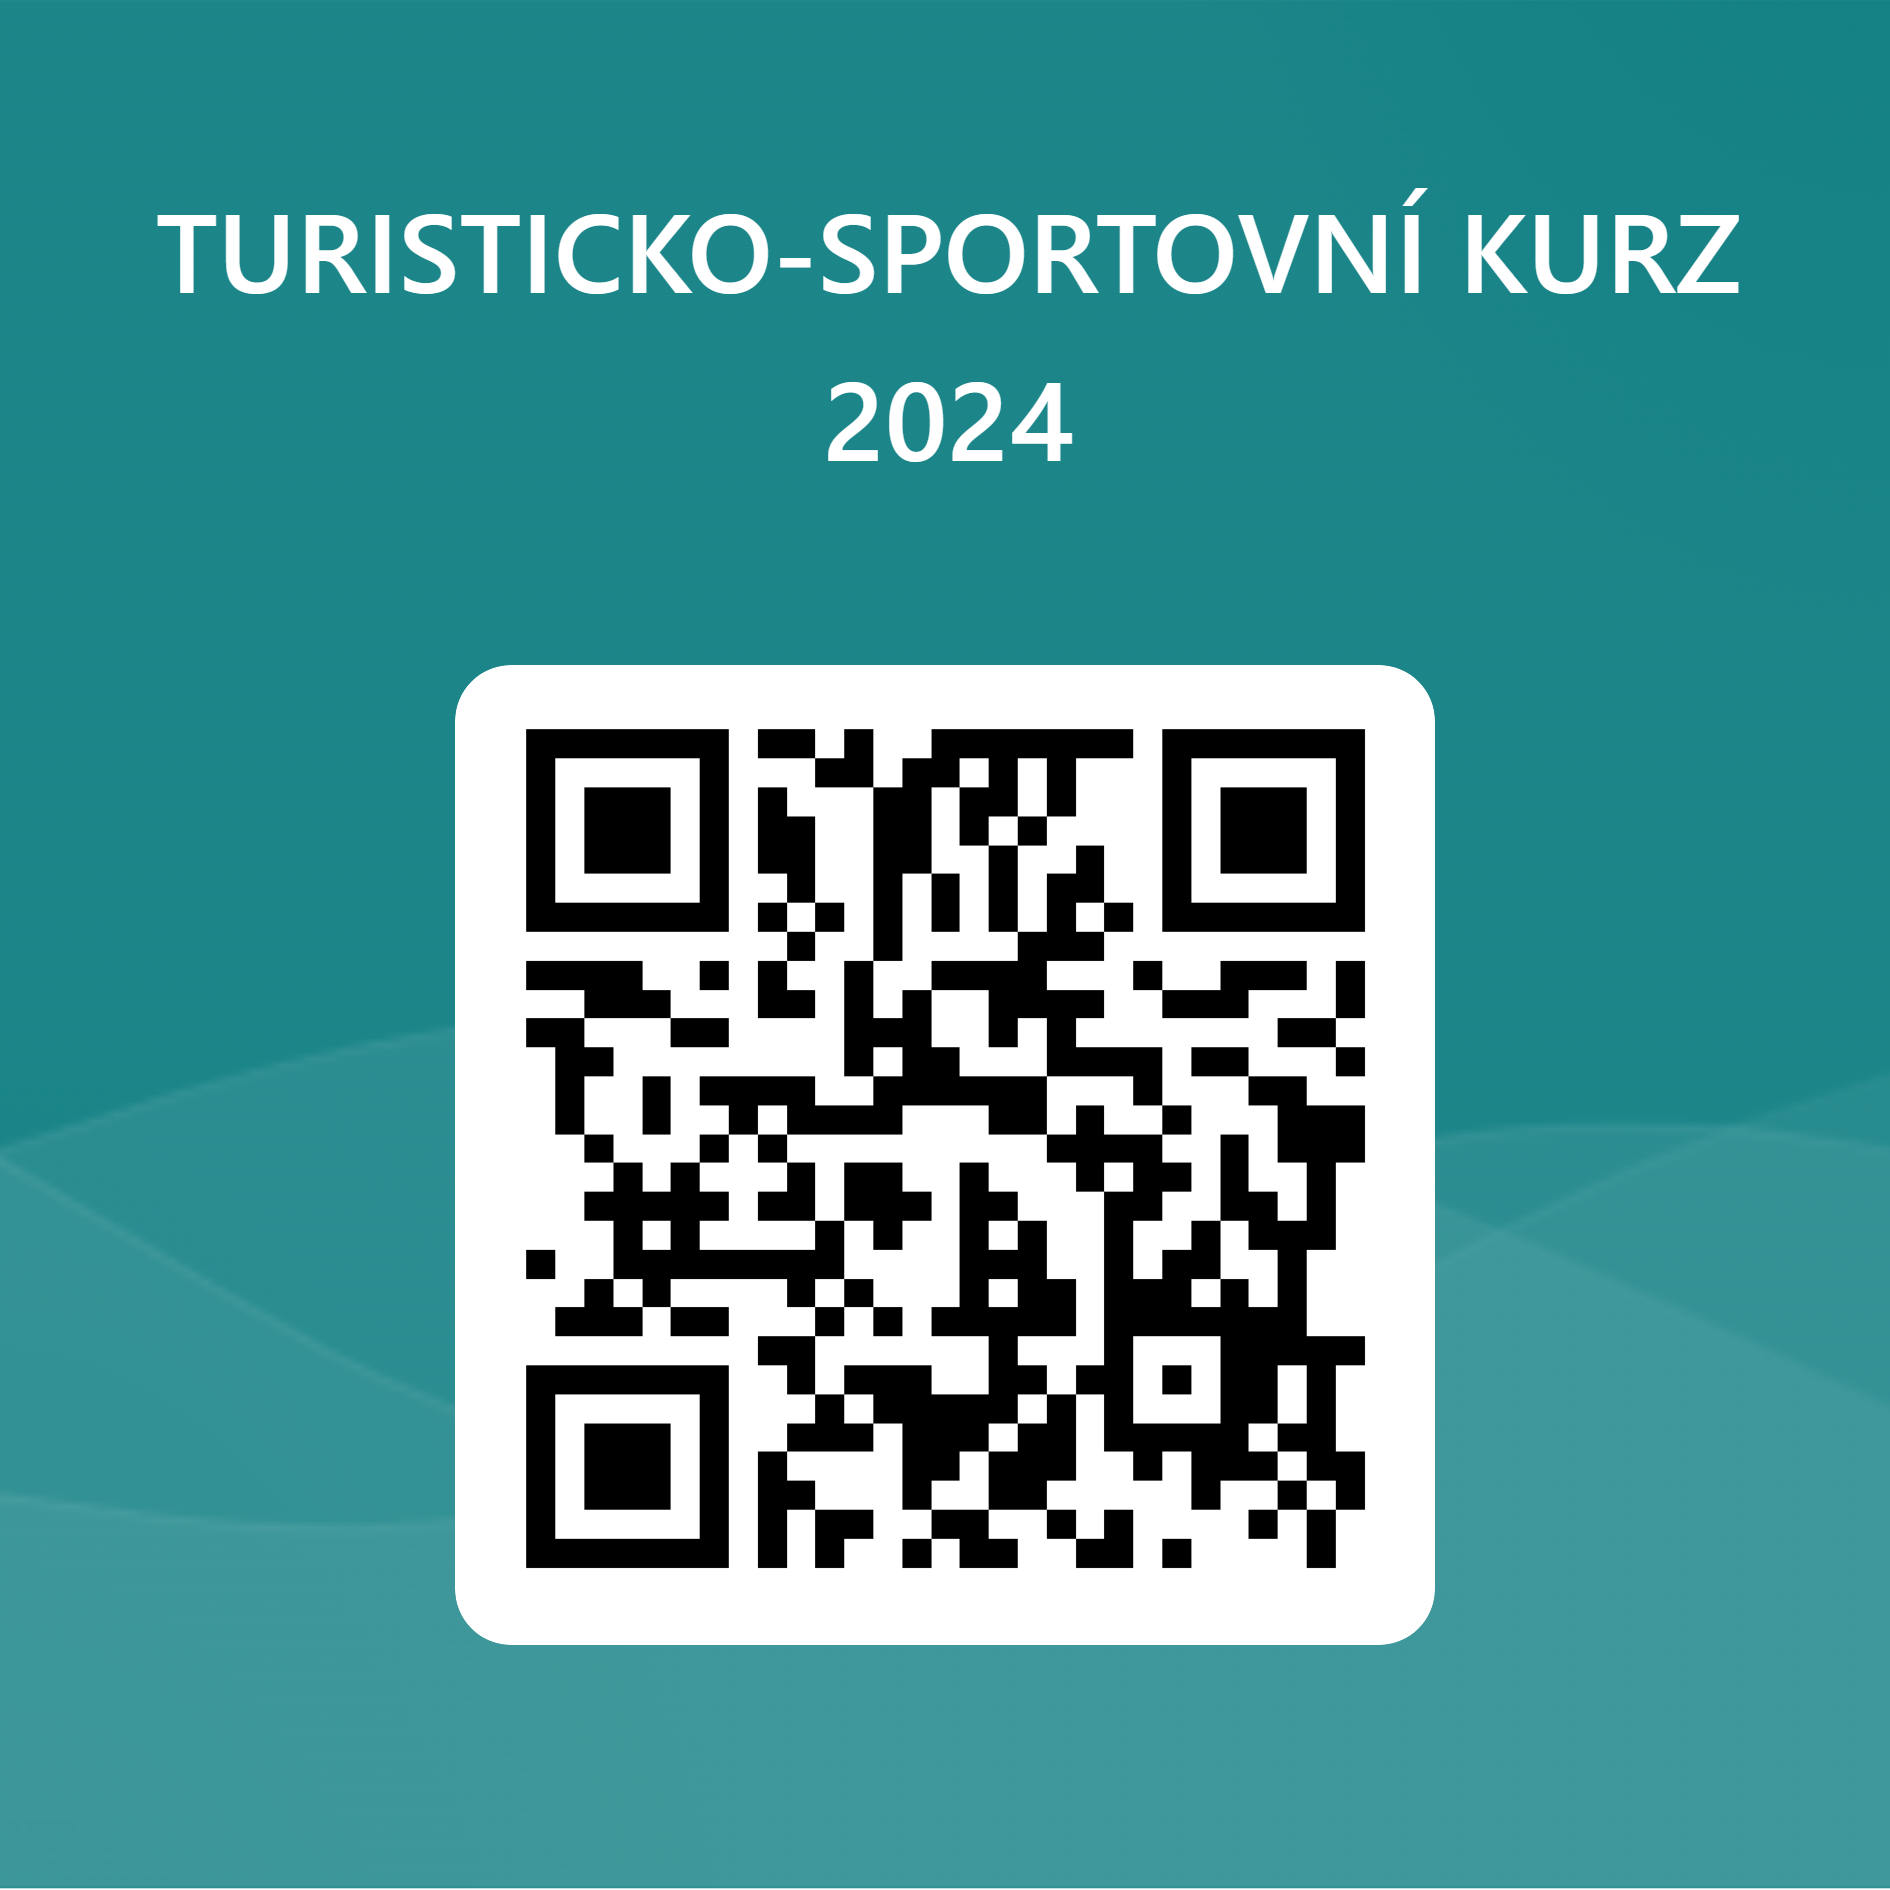 QRCode_pro_TURISTICKO-SPORTOVNI_KURZ_2024_1.png